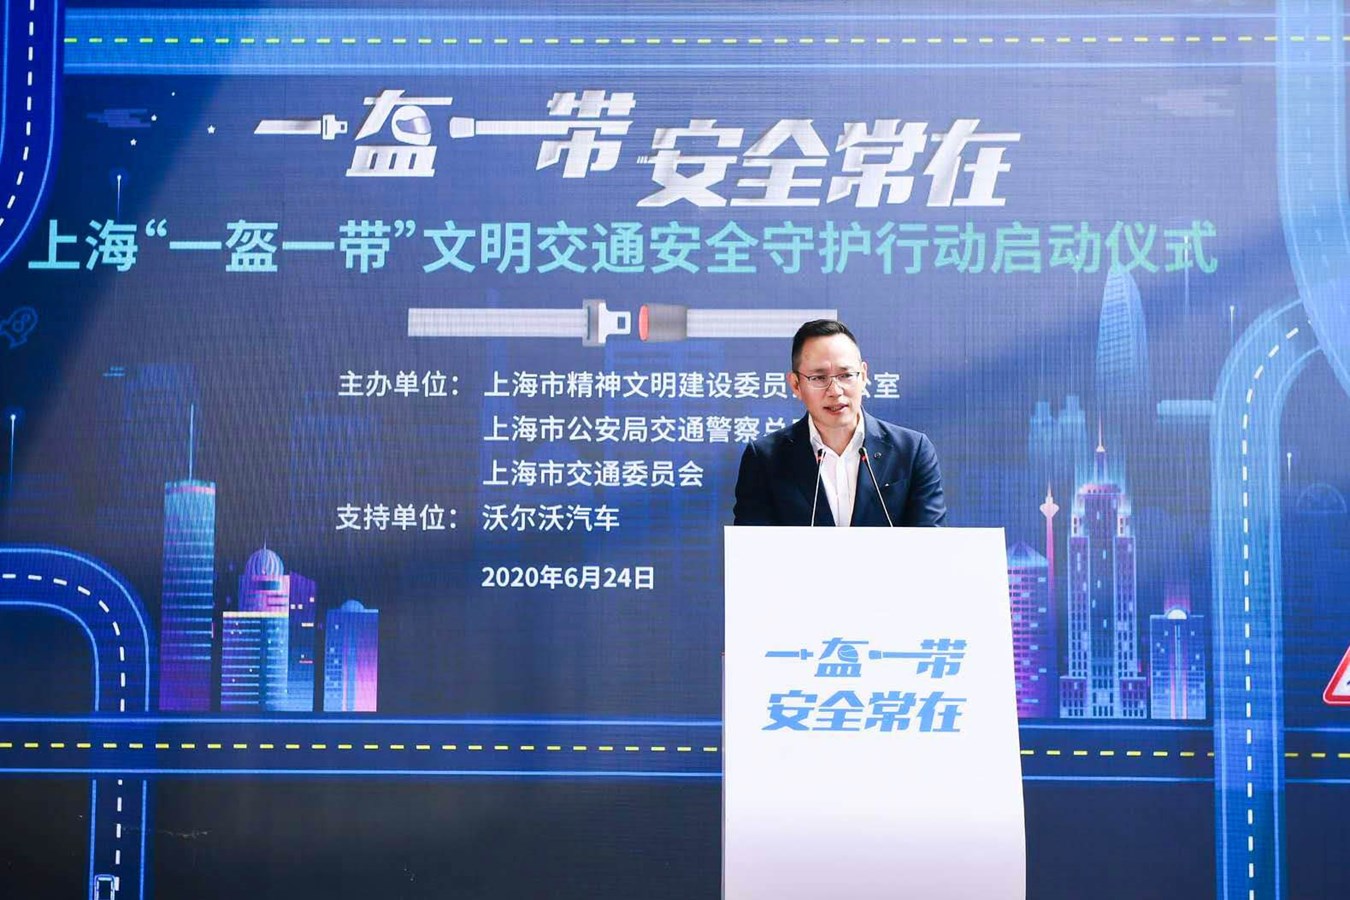 沃尔沃汽车集团全球高级副总裁、沃尔沃汽车亚太区总裁兼CEO袁小林先生致辞